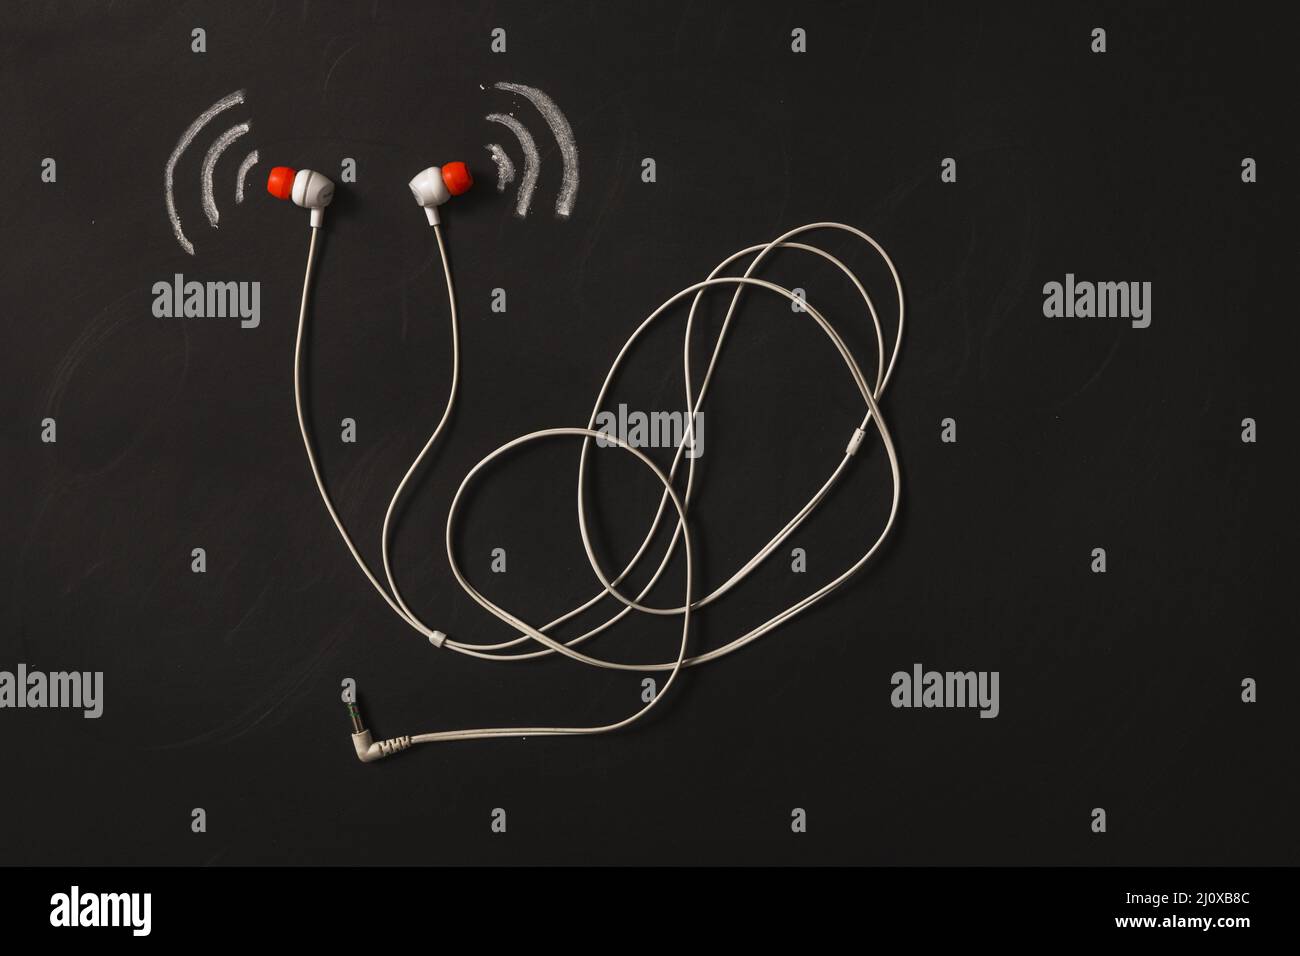 Geräuschwellensymbol in der Nähe der Tafel des Kopfhöreranhörern. Hochwertige Fotos Stockfoto